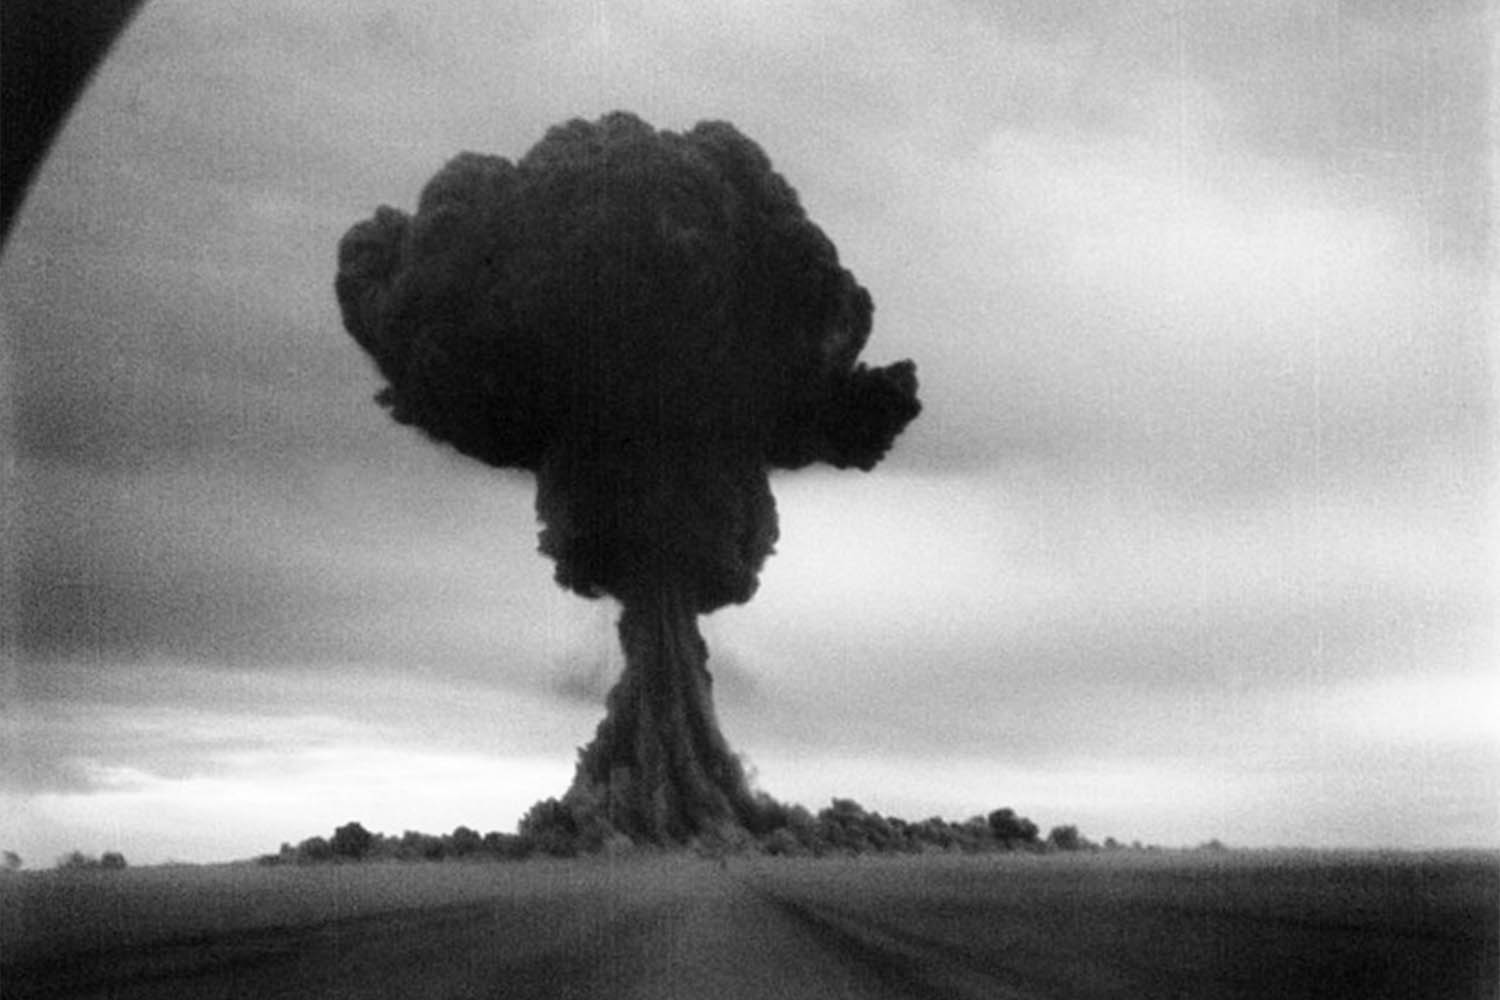 תיעוד של הניסוי הפצצה האטומית הסובייטית הראשונה ב-1949 (צילום: Sovfoto/Universal Images Group via Getty Images)